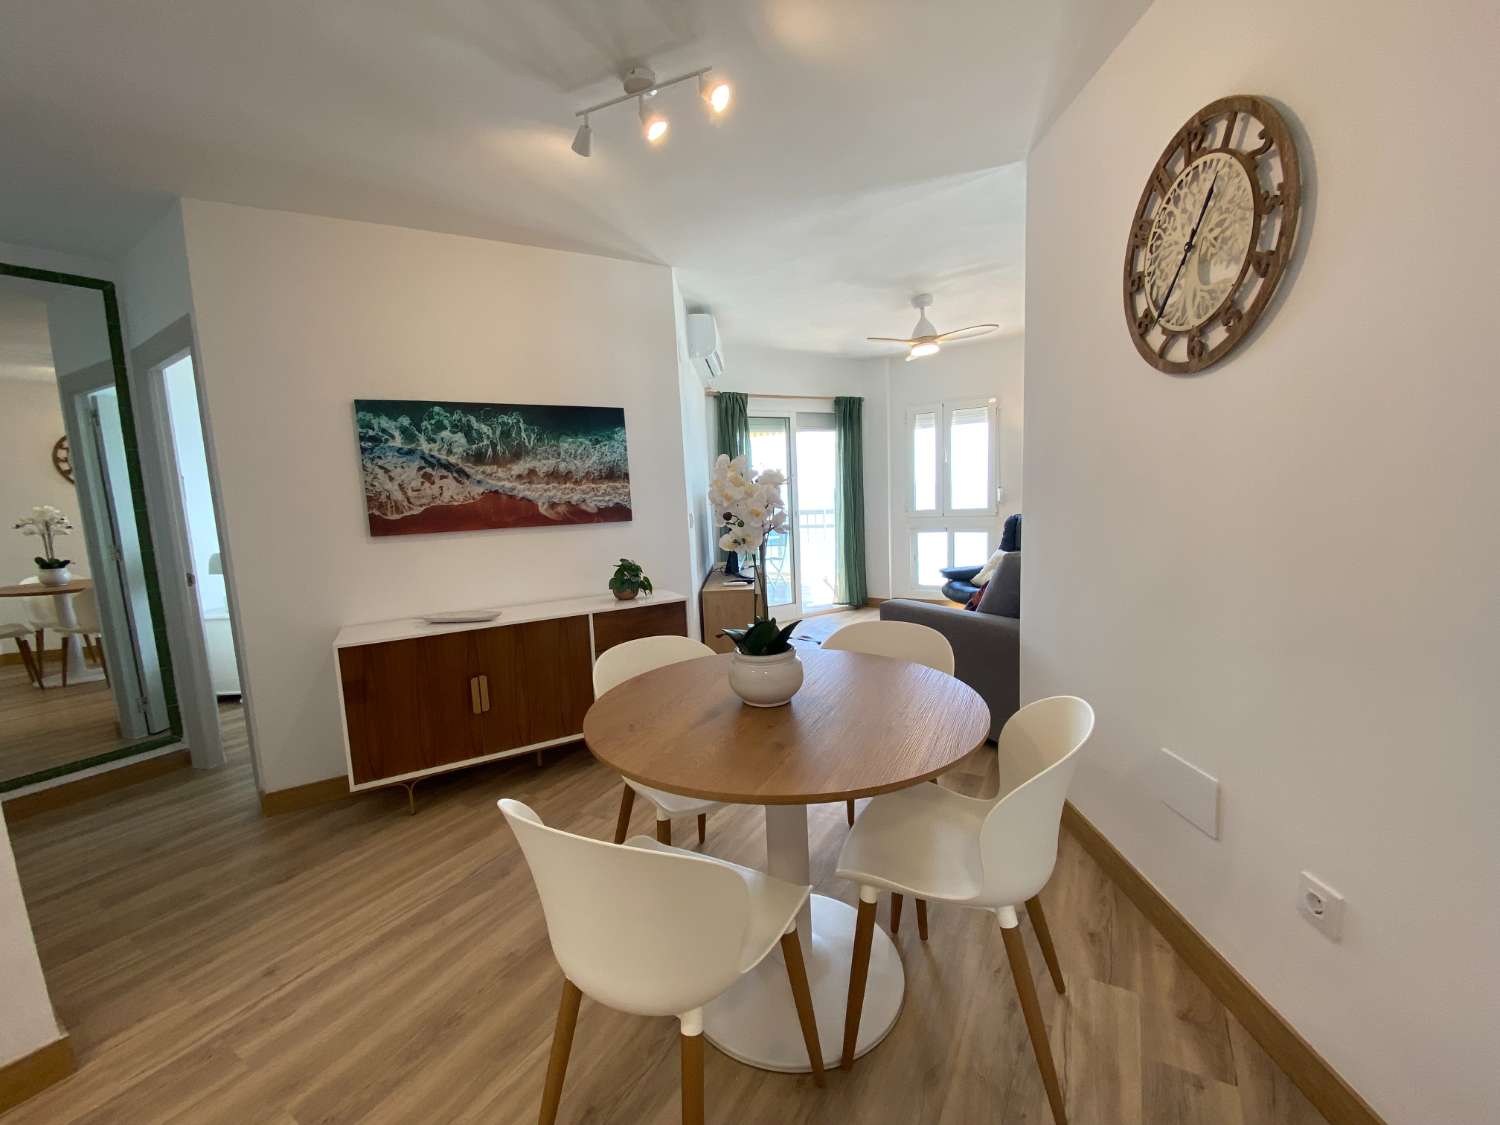 Unglaublich renovierte Wohnung mit Panoramablick auf das Meer: Das perfekte Zuhause für Strandliebhaber!“